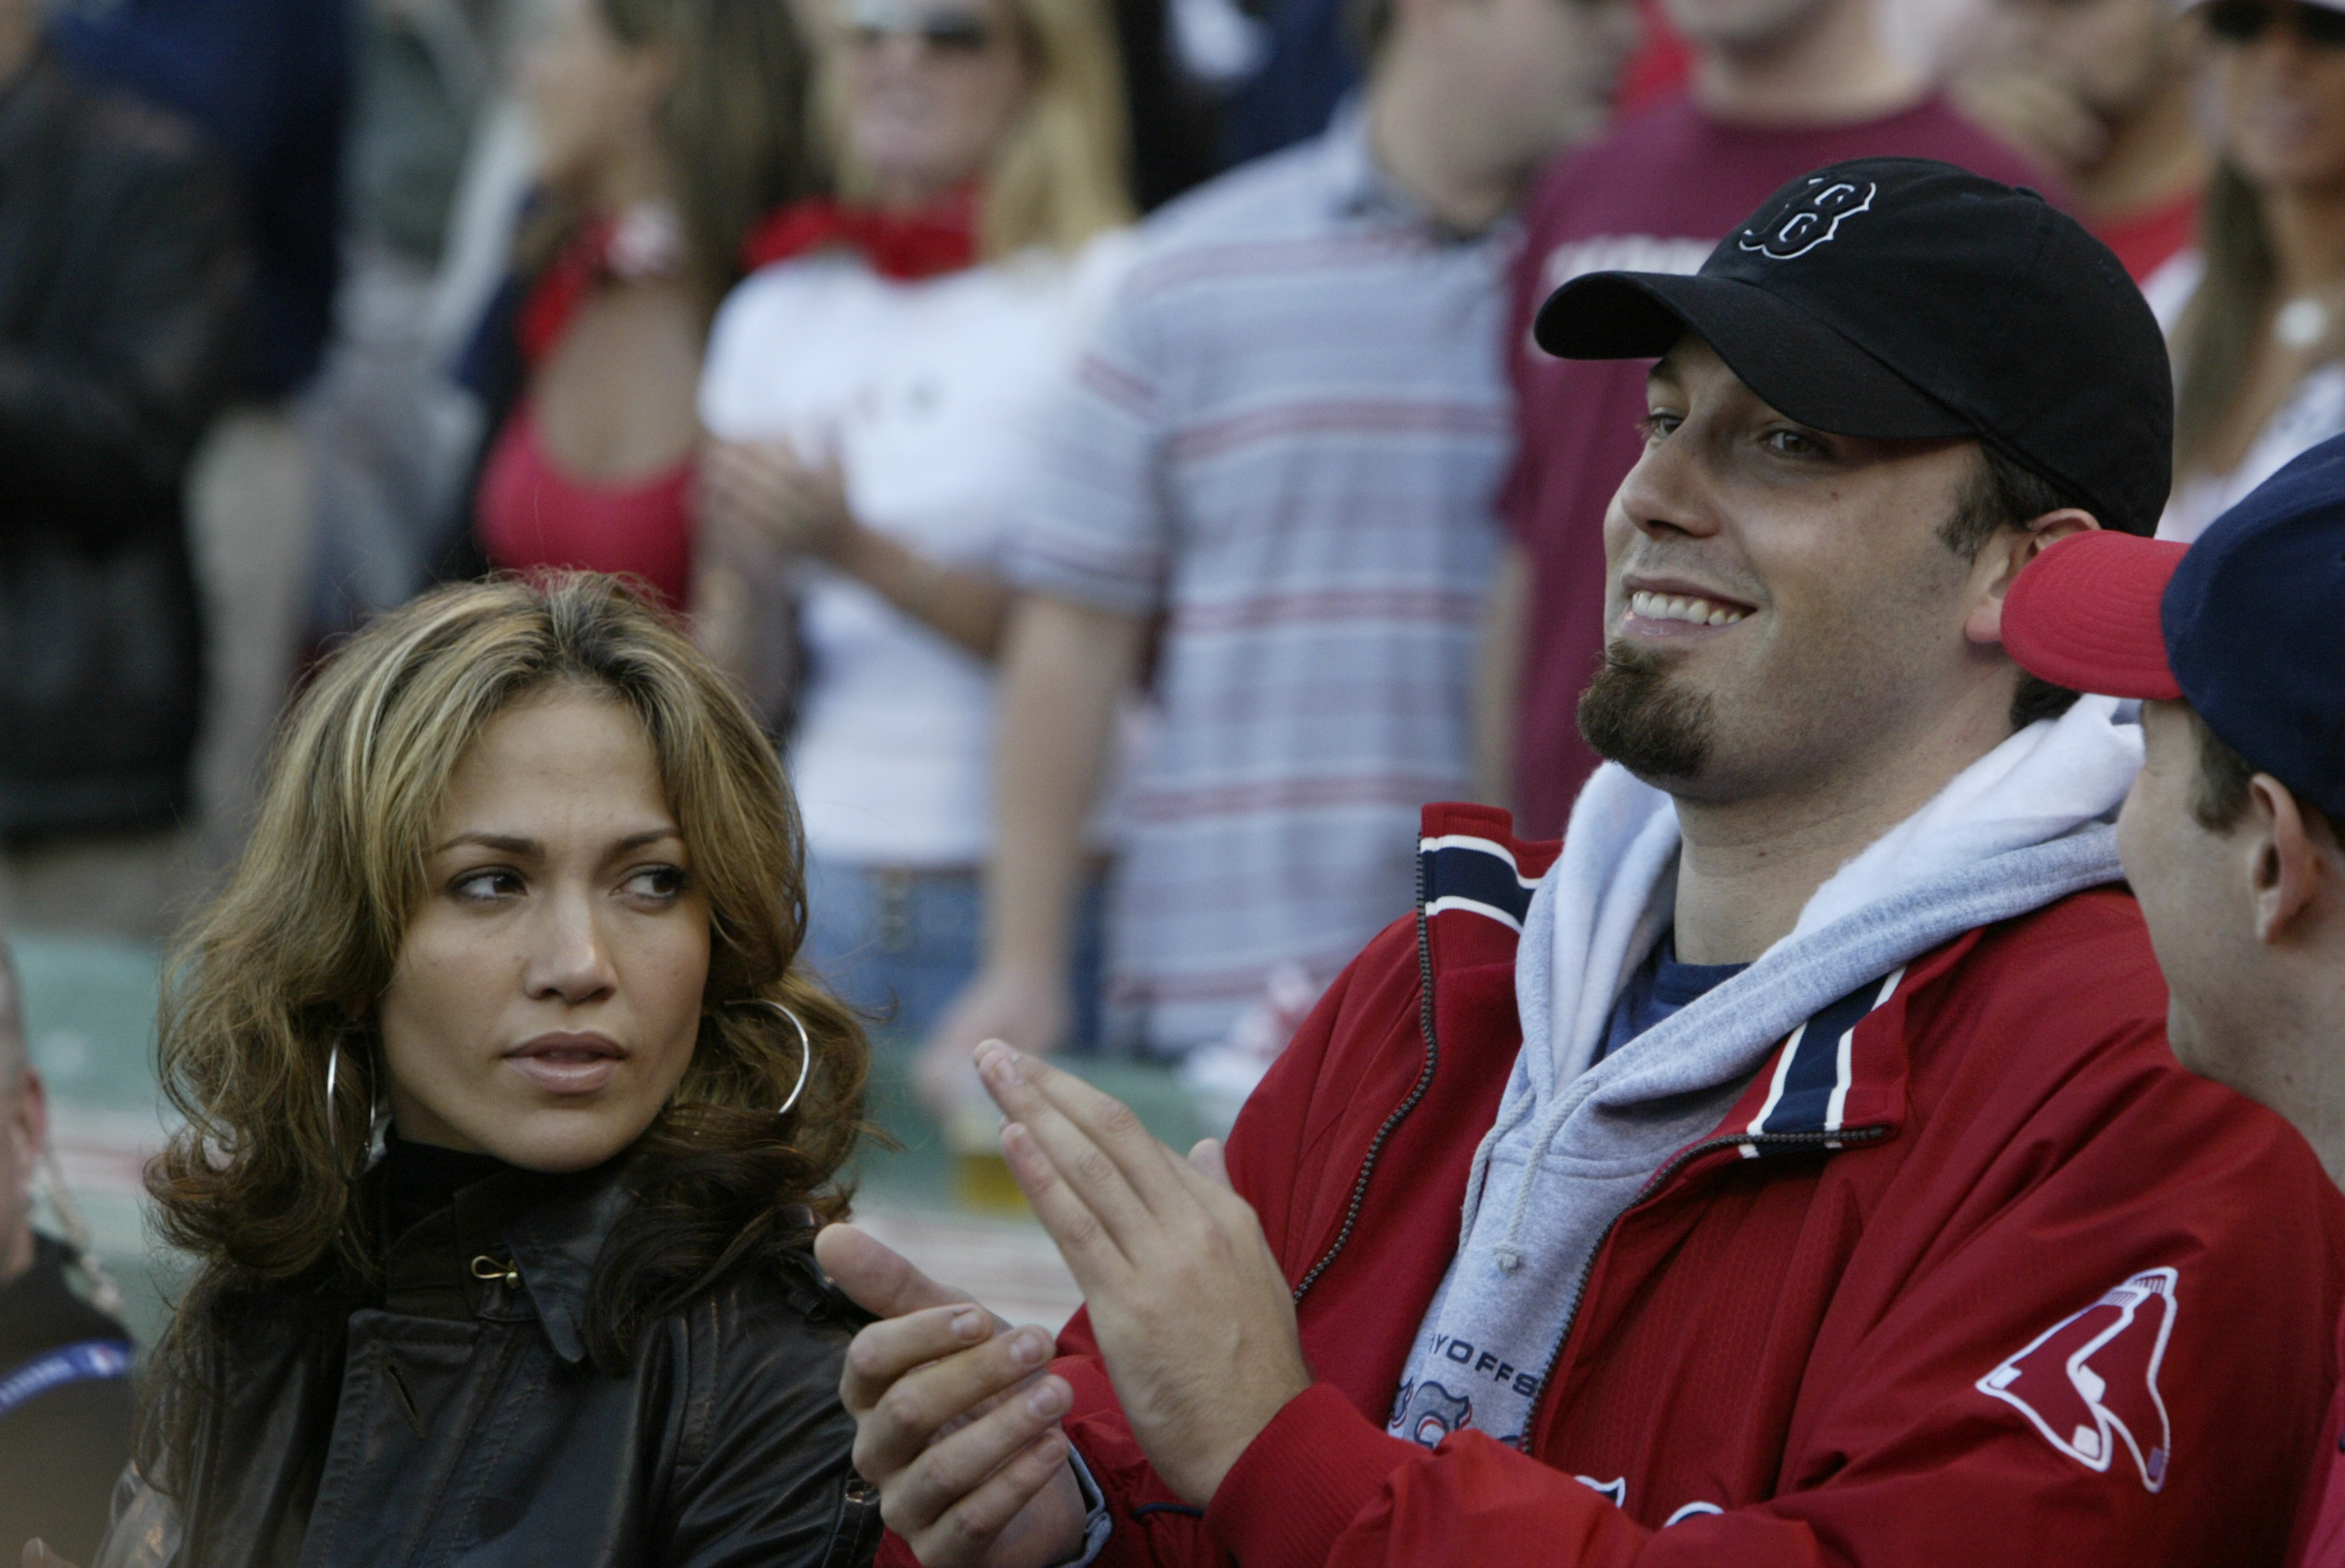 Jennifer Lopez Breaks the Internet Wearing Nick Fouquet, News